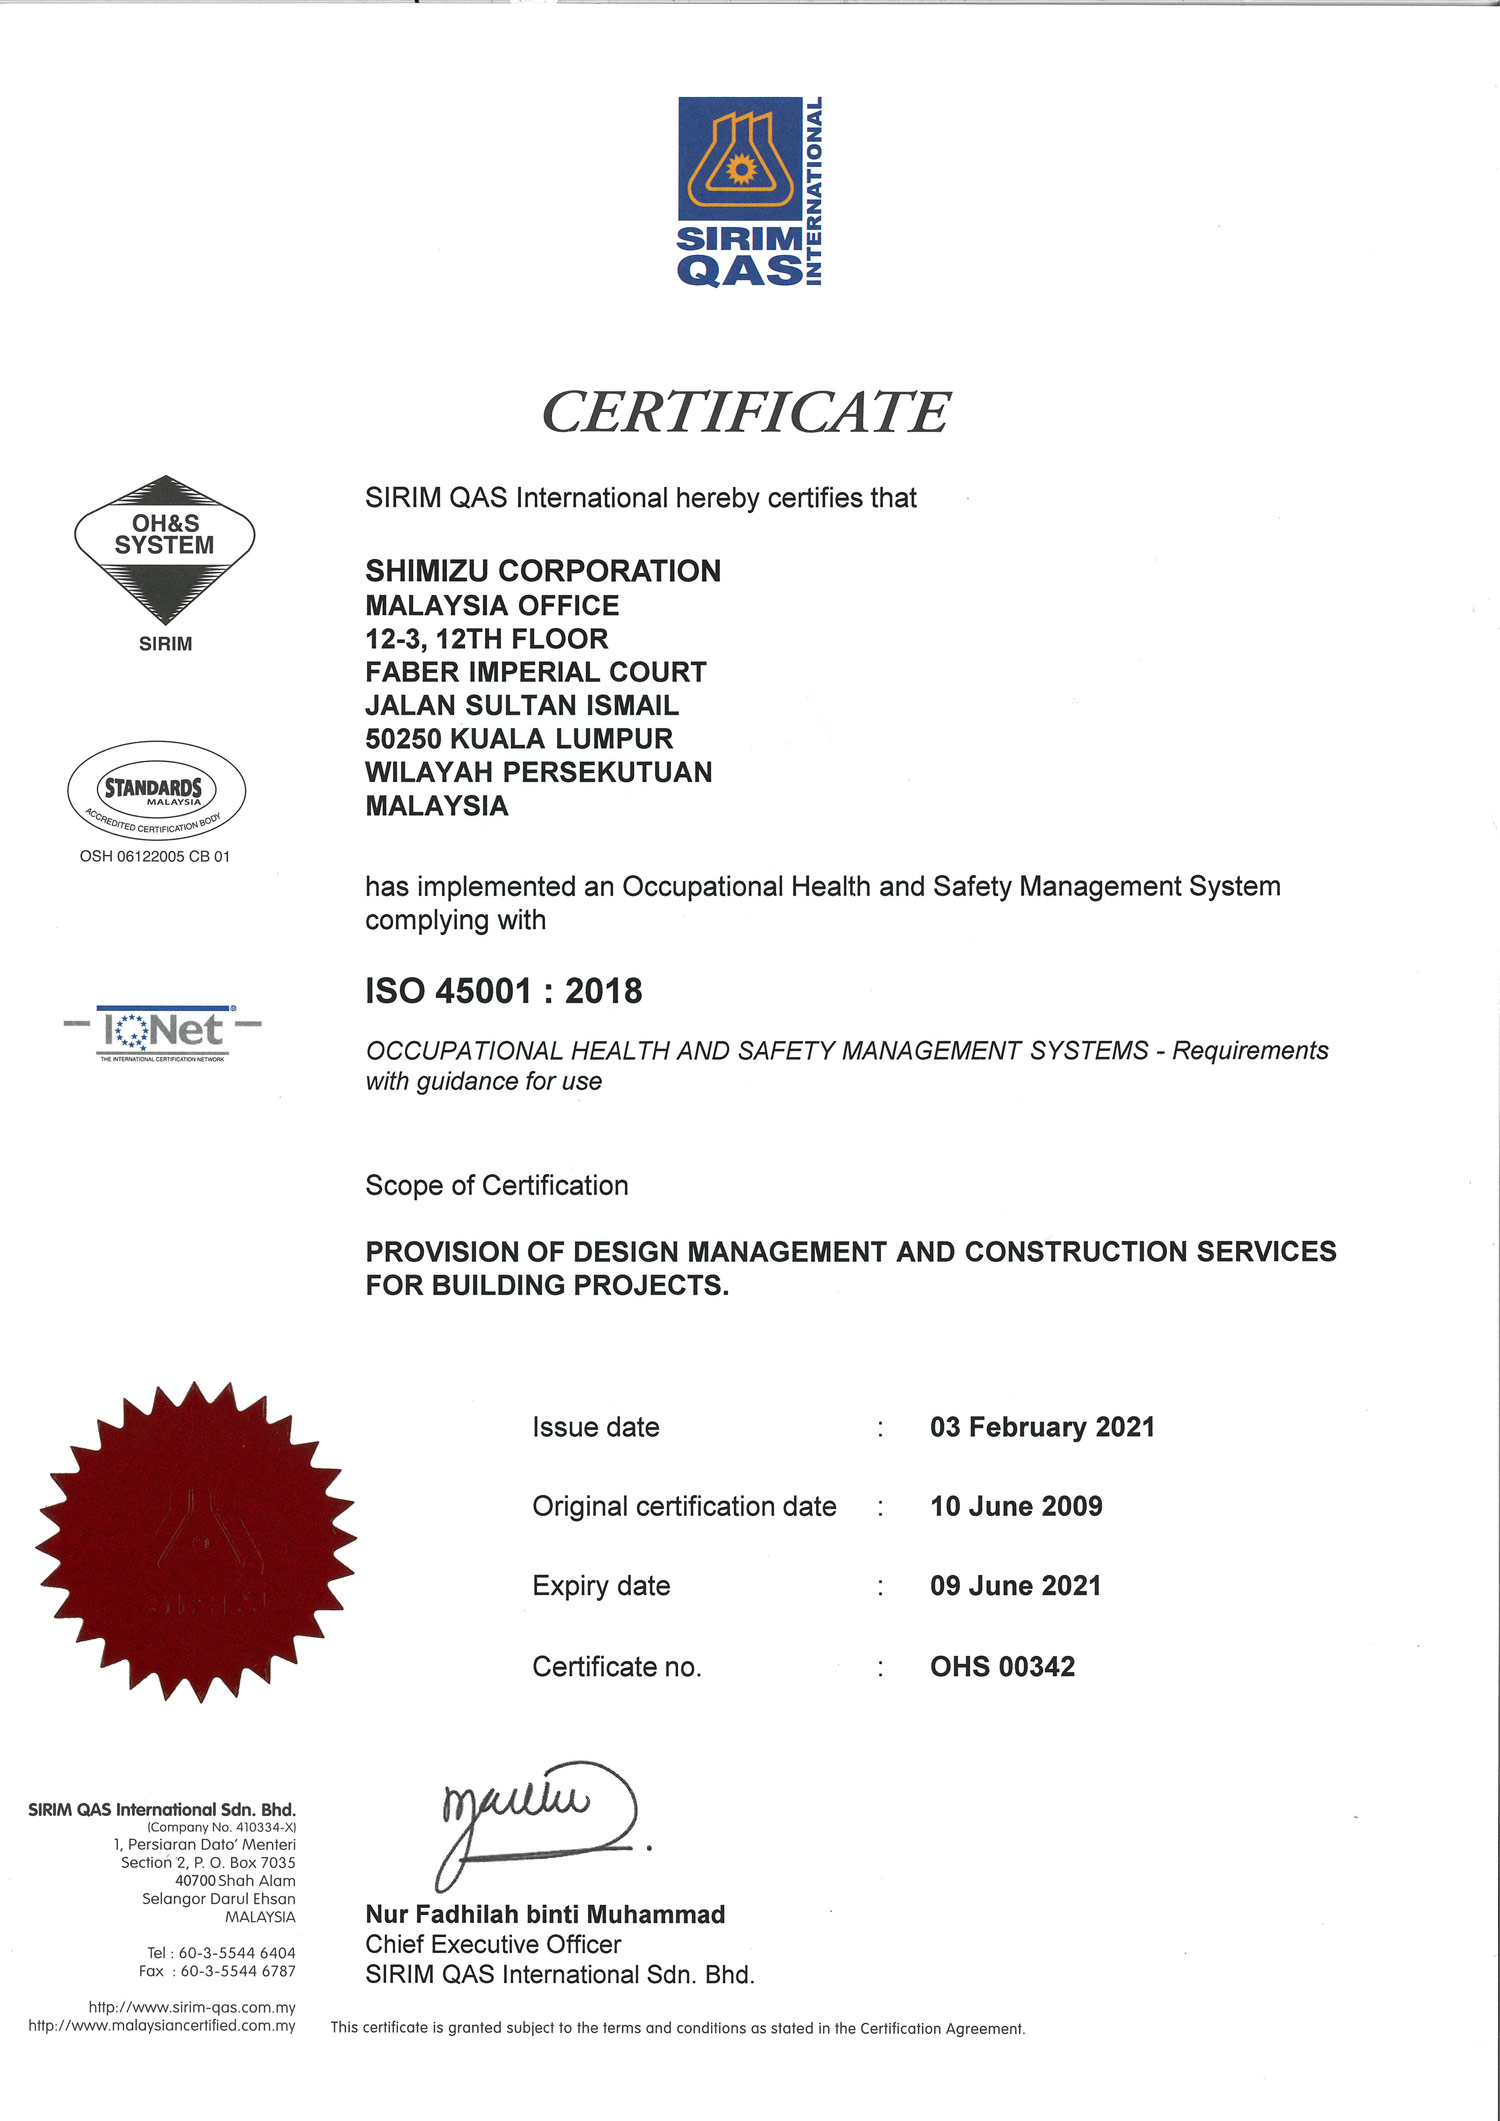 SIRIM Certificate ISO 45001 2018